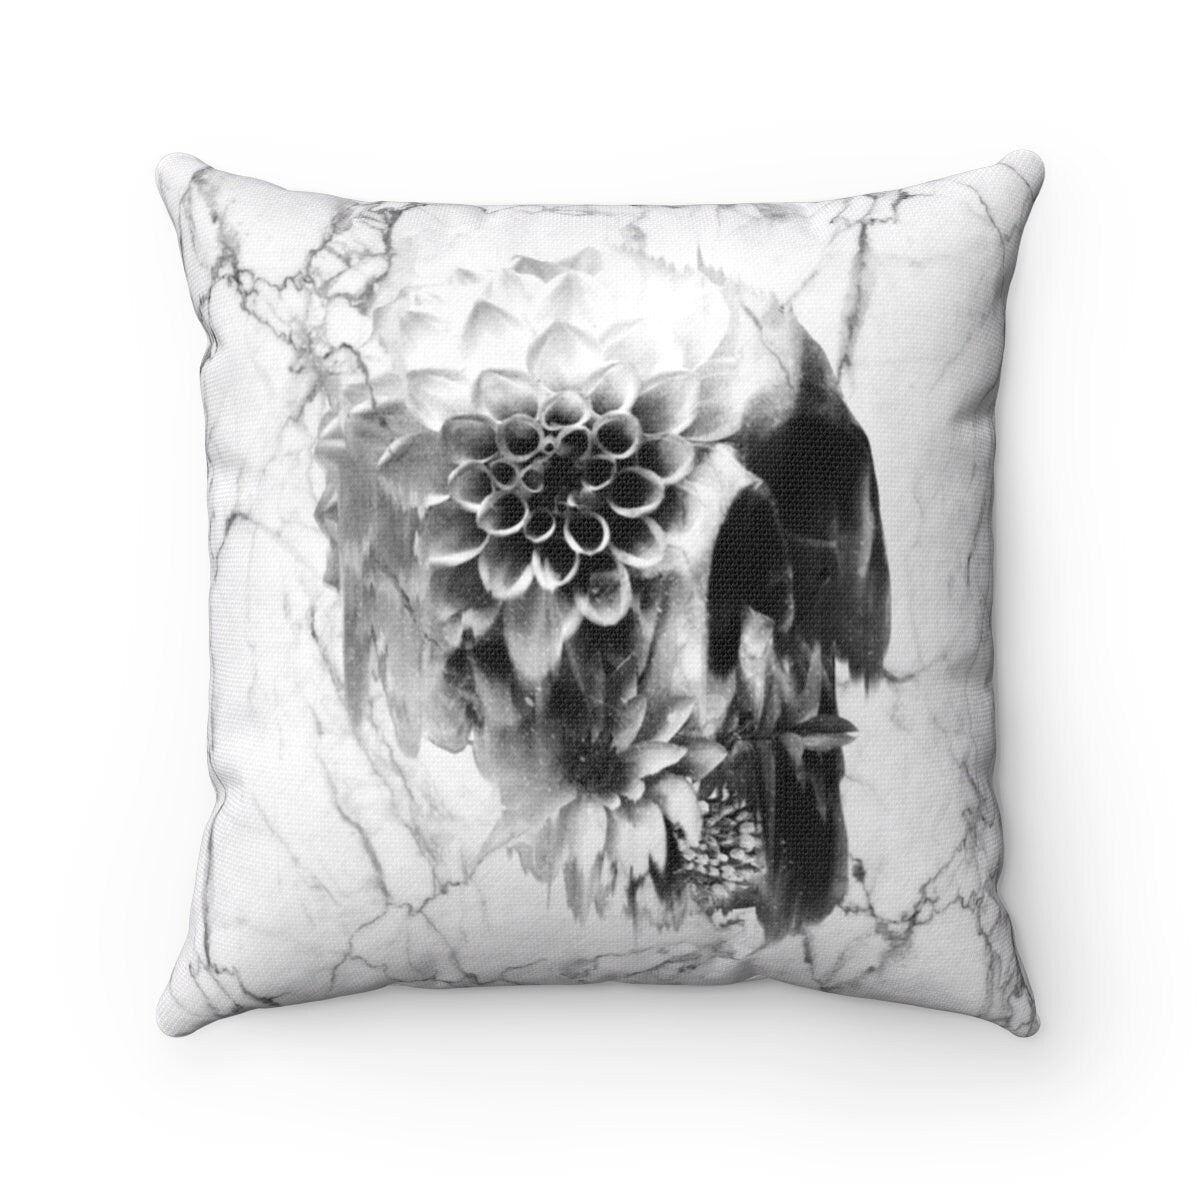 Marble Skull Throw Pillow, Floral Skull Spun Polyester Square Pillow, Gothic Sugar Skull Home Decor, Flower Skull Pillow Decor Gift